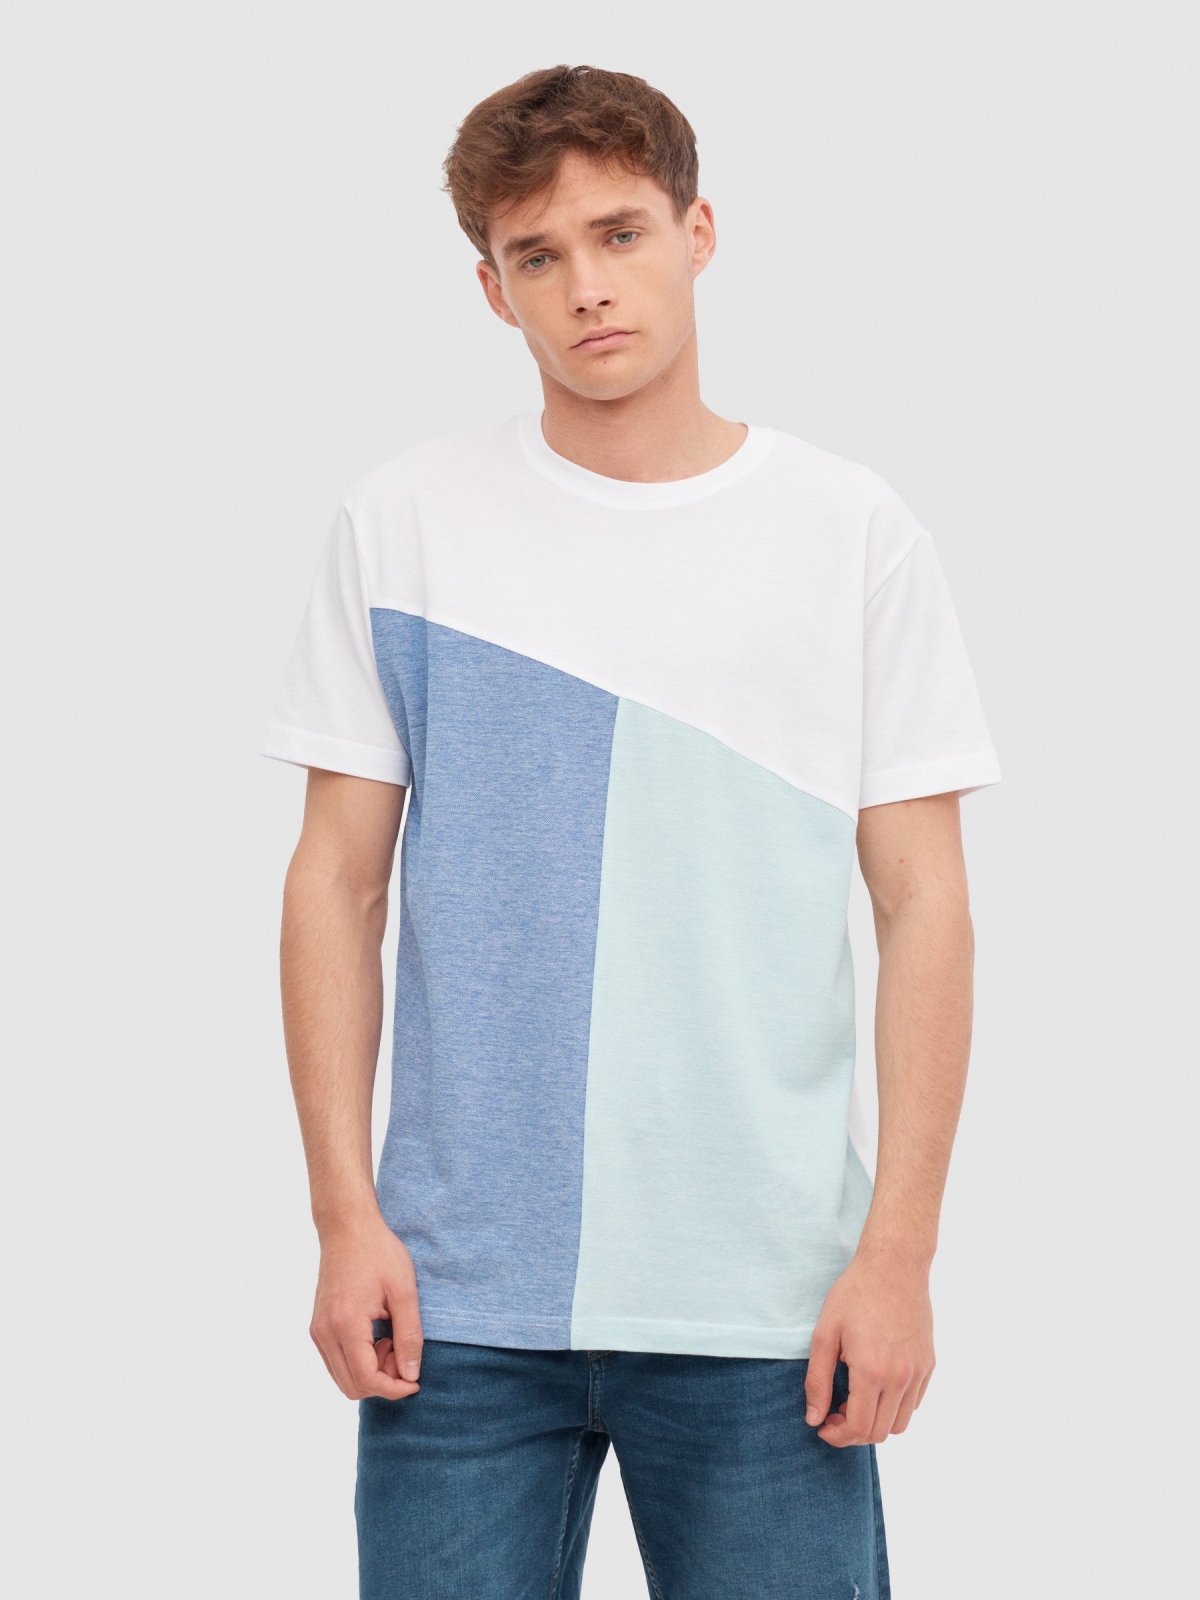 Asymmetric colour block t-shirt white middle front view